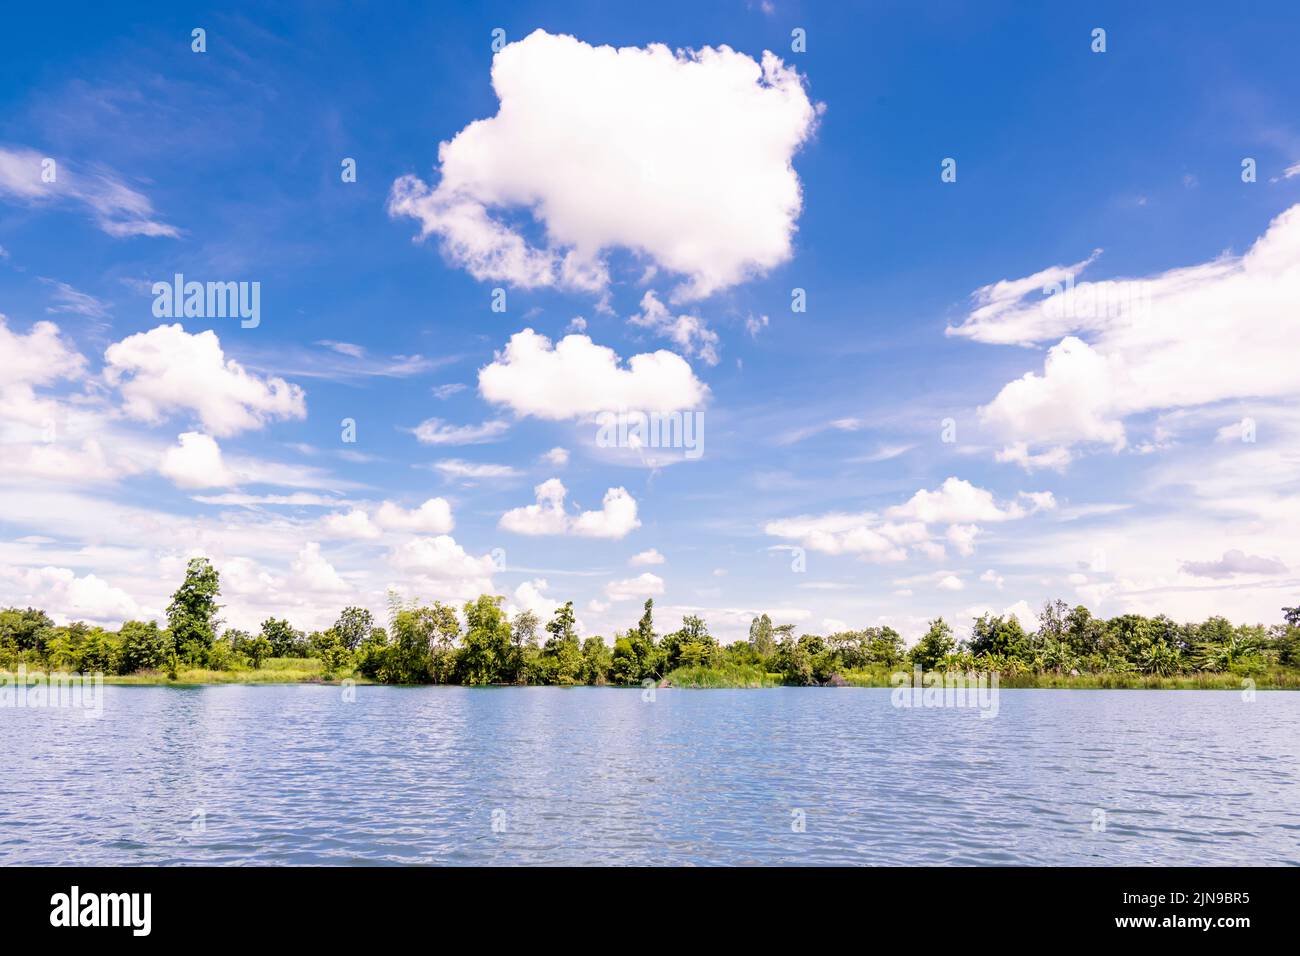 lago estanque contra árboles verdes cerca del cielo azul con nubes. Foto de stock